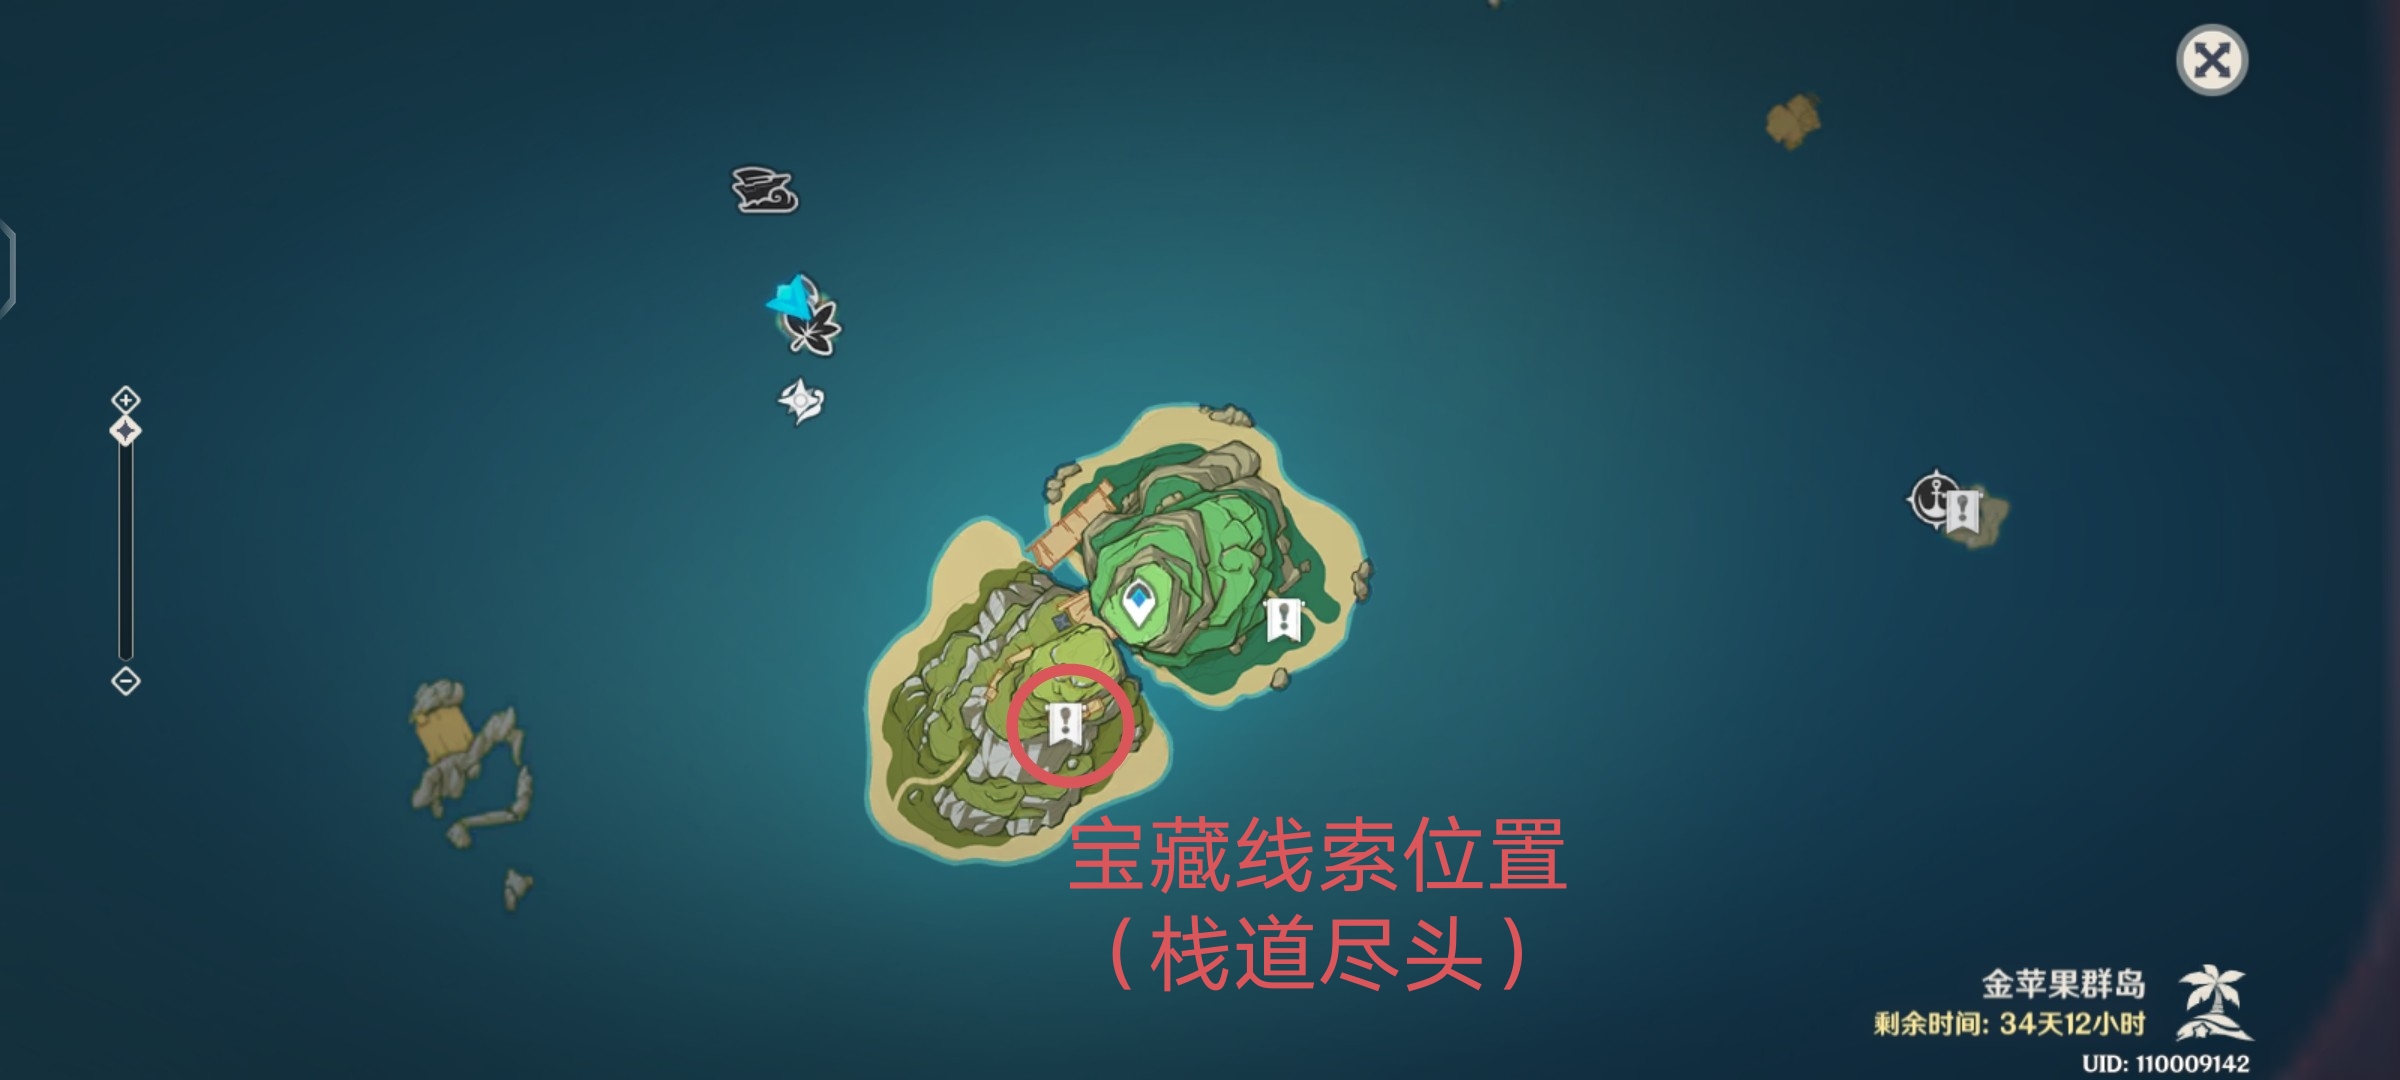 【V2.8攻略】#探索解谜#2.8版本金苹果群岛的新增世界任务——「四礁觅宝记」的流程梳理|原神 - 第74张